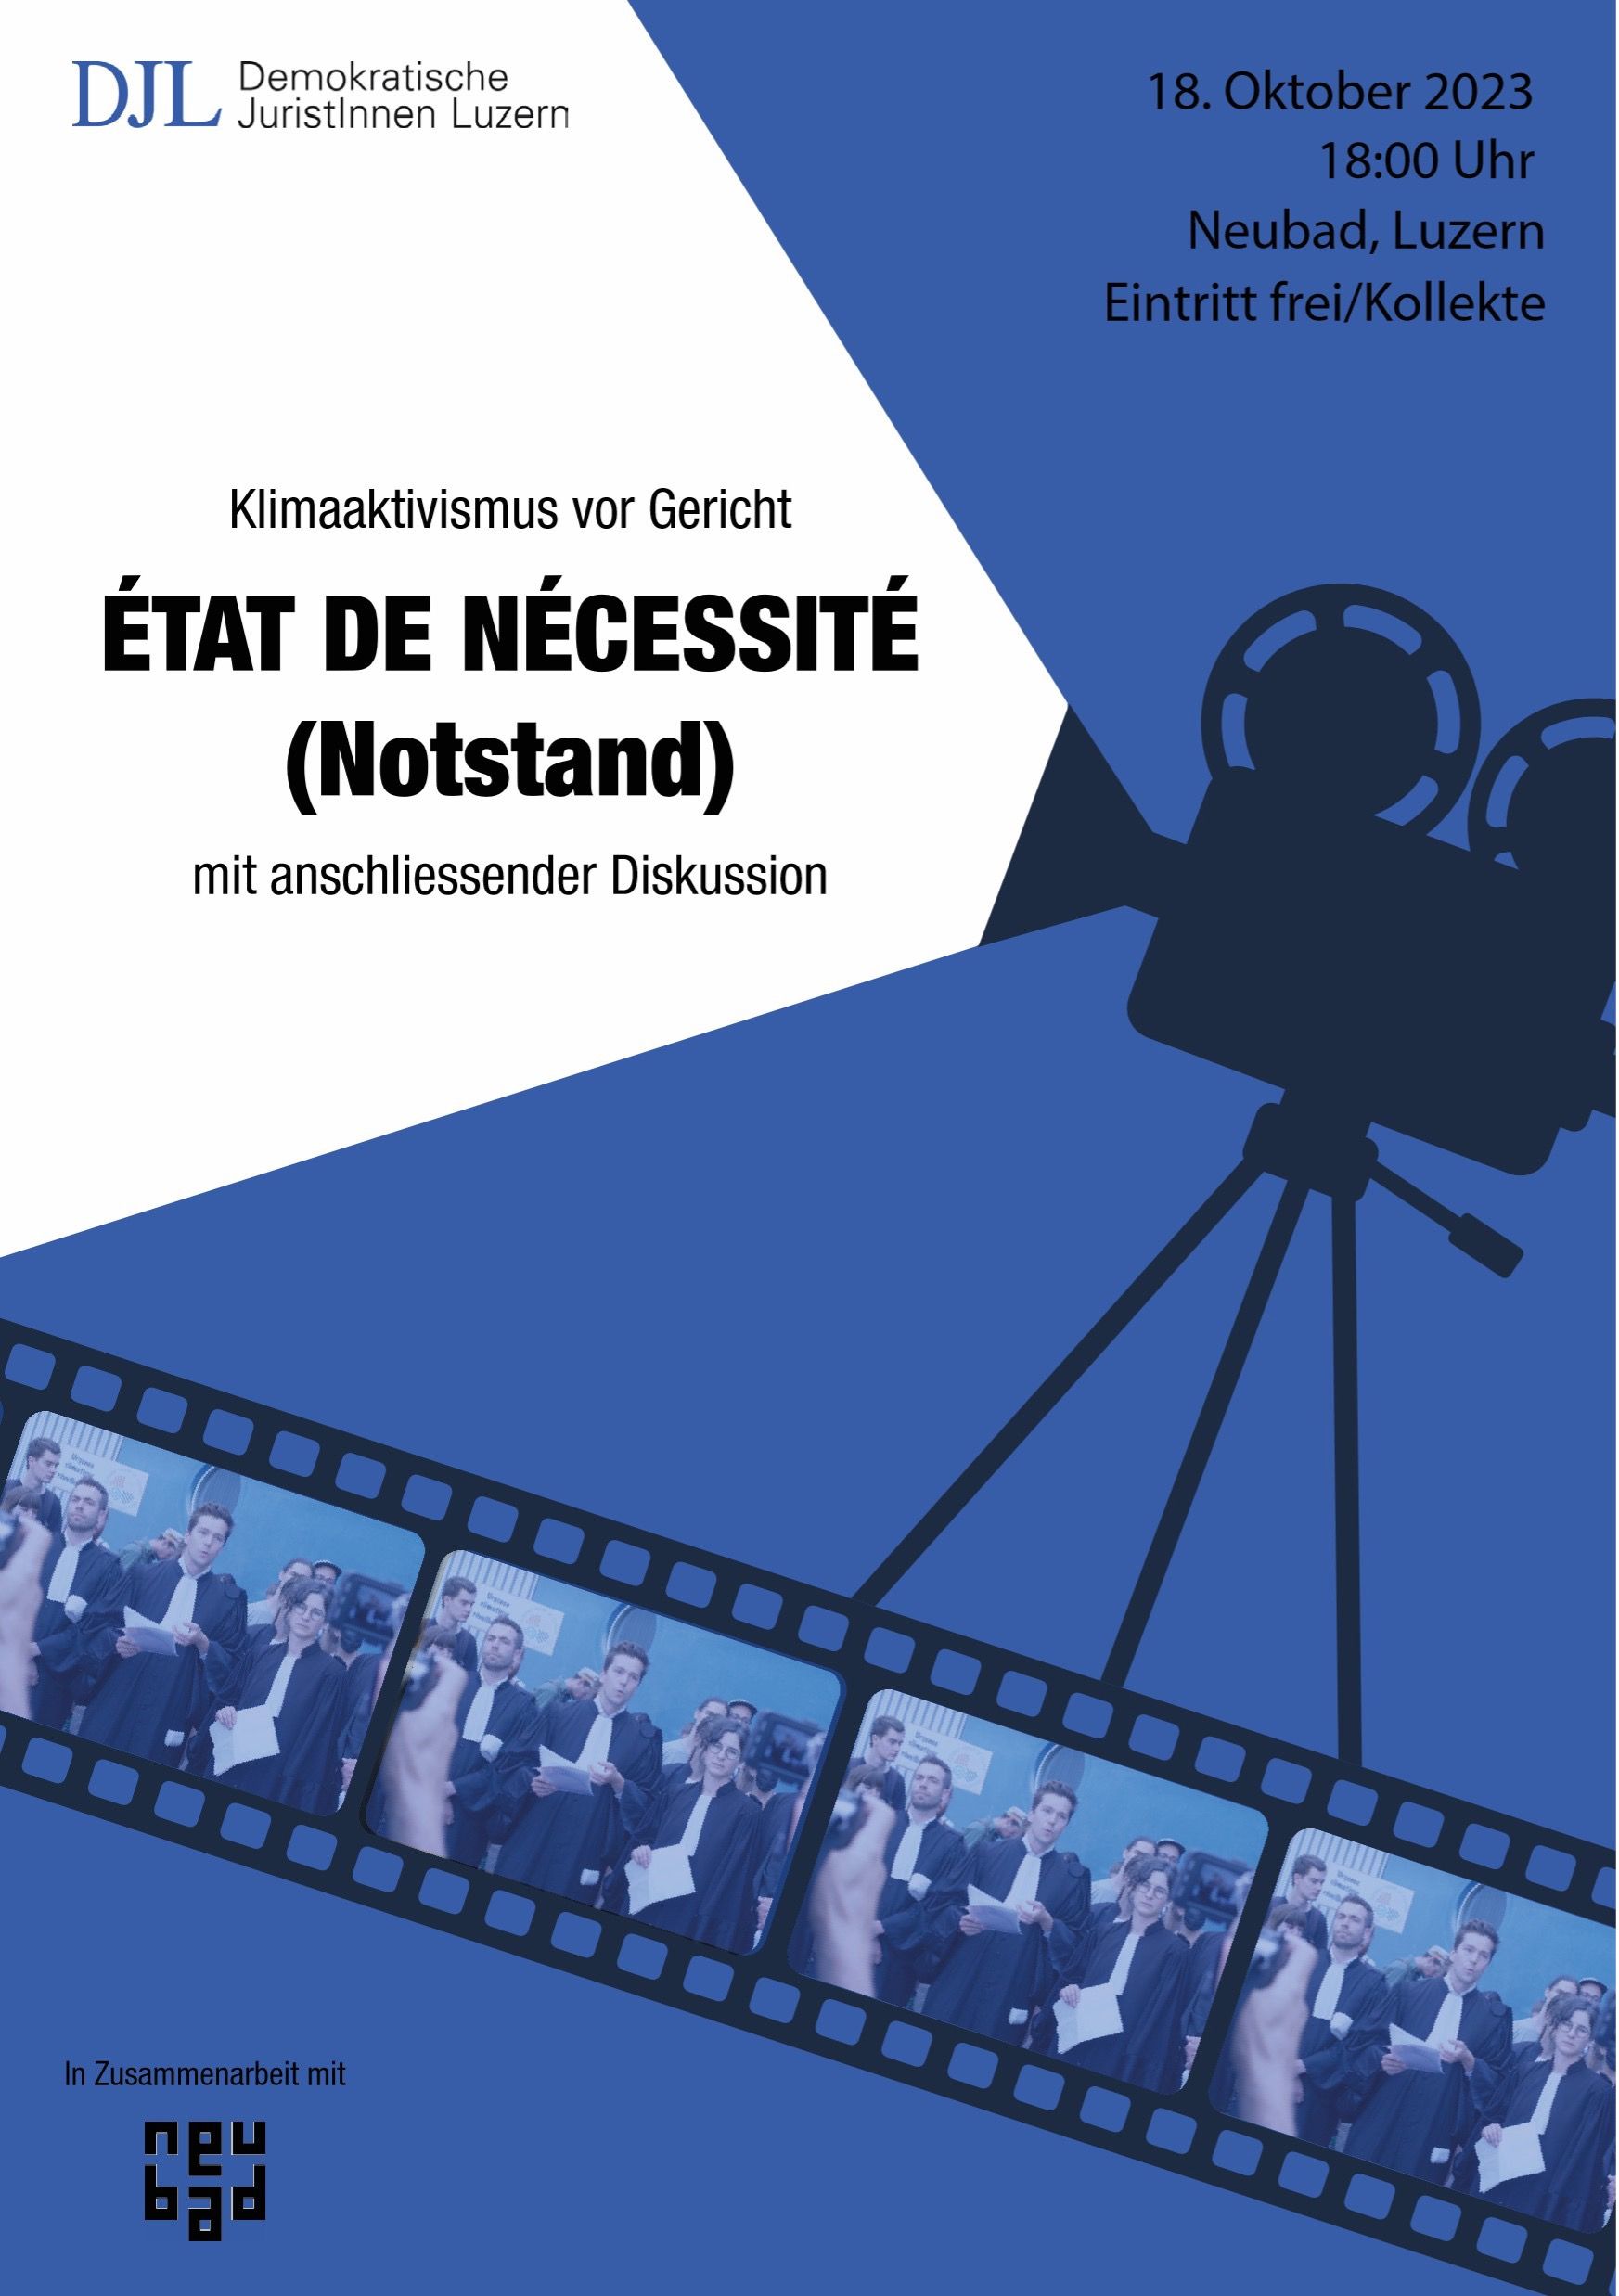 Flyer mit Infos zur Veranstaltung ÉTAT DE NÉCESSITÉ